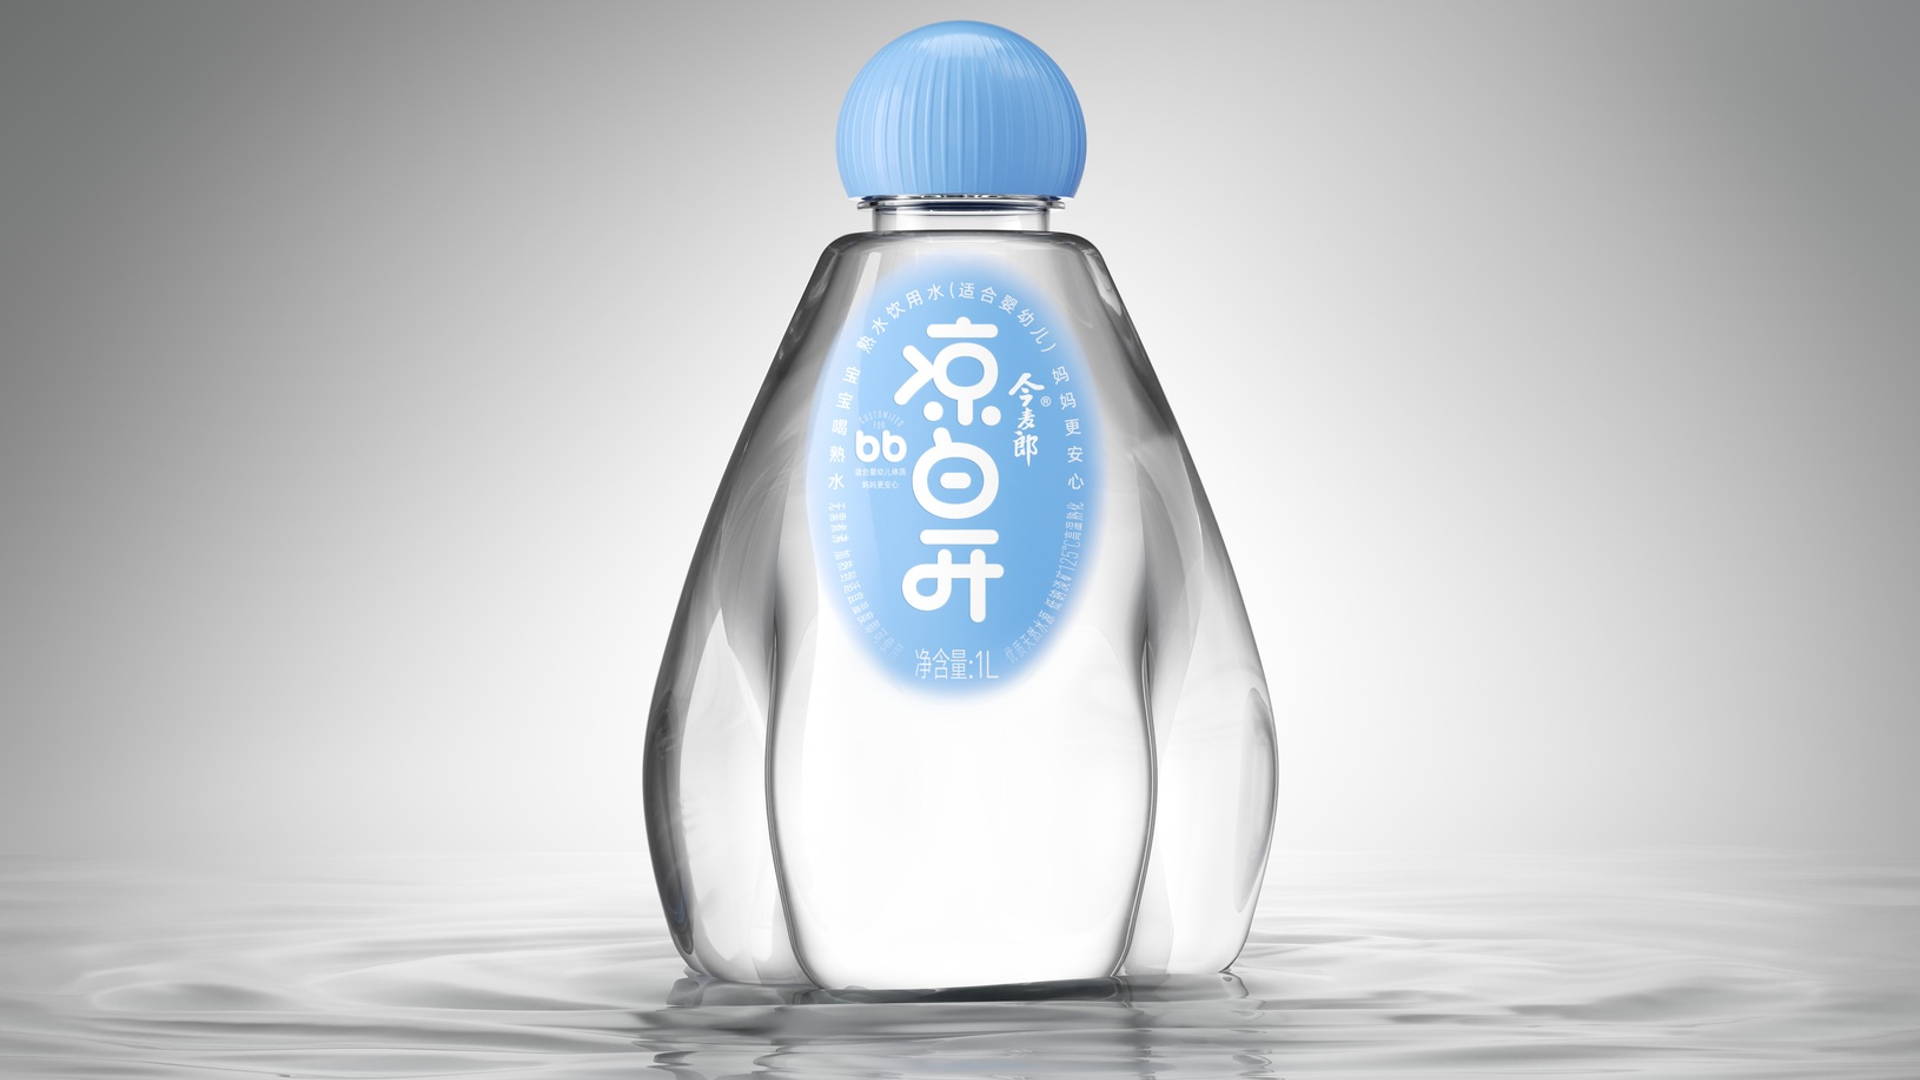 10 Water Packaging Designs  Dieline - Design, Branding & Packaging  Inspiration